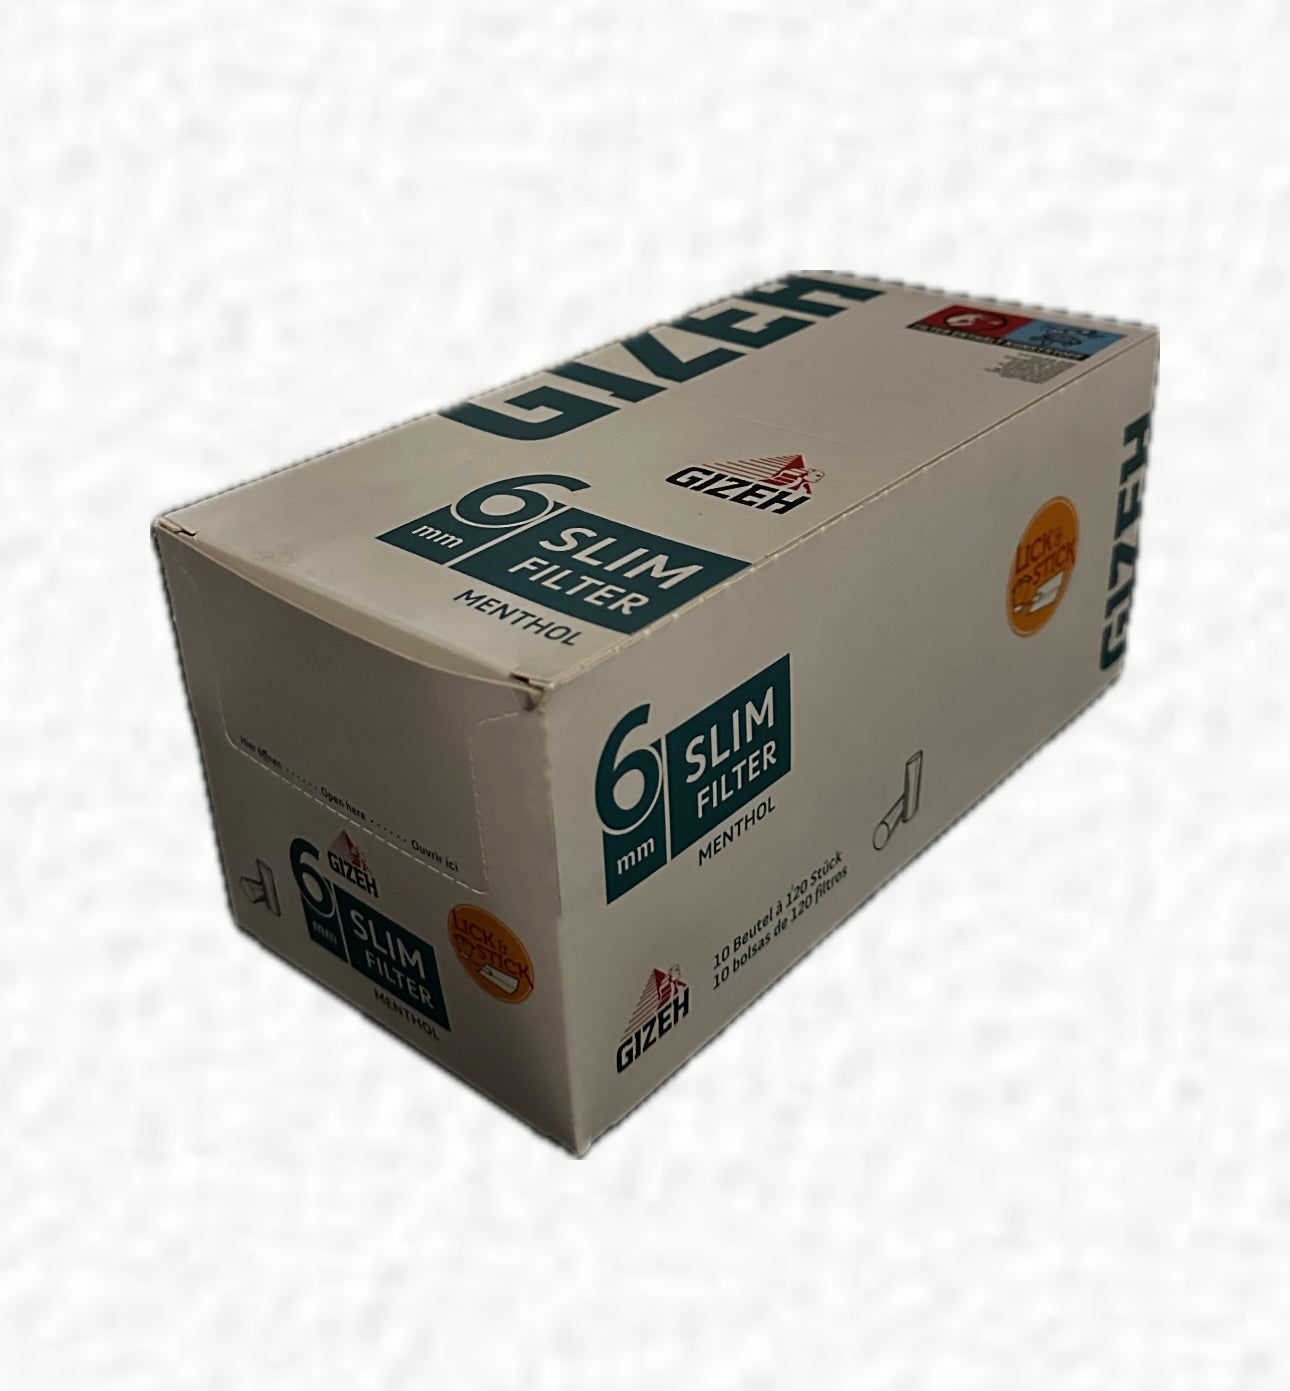 Filtri Gizeh 6 mm Slim al Mentolo - In vendita su